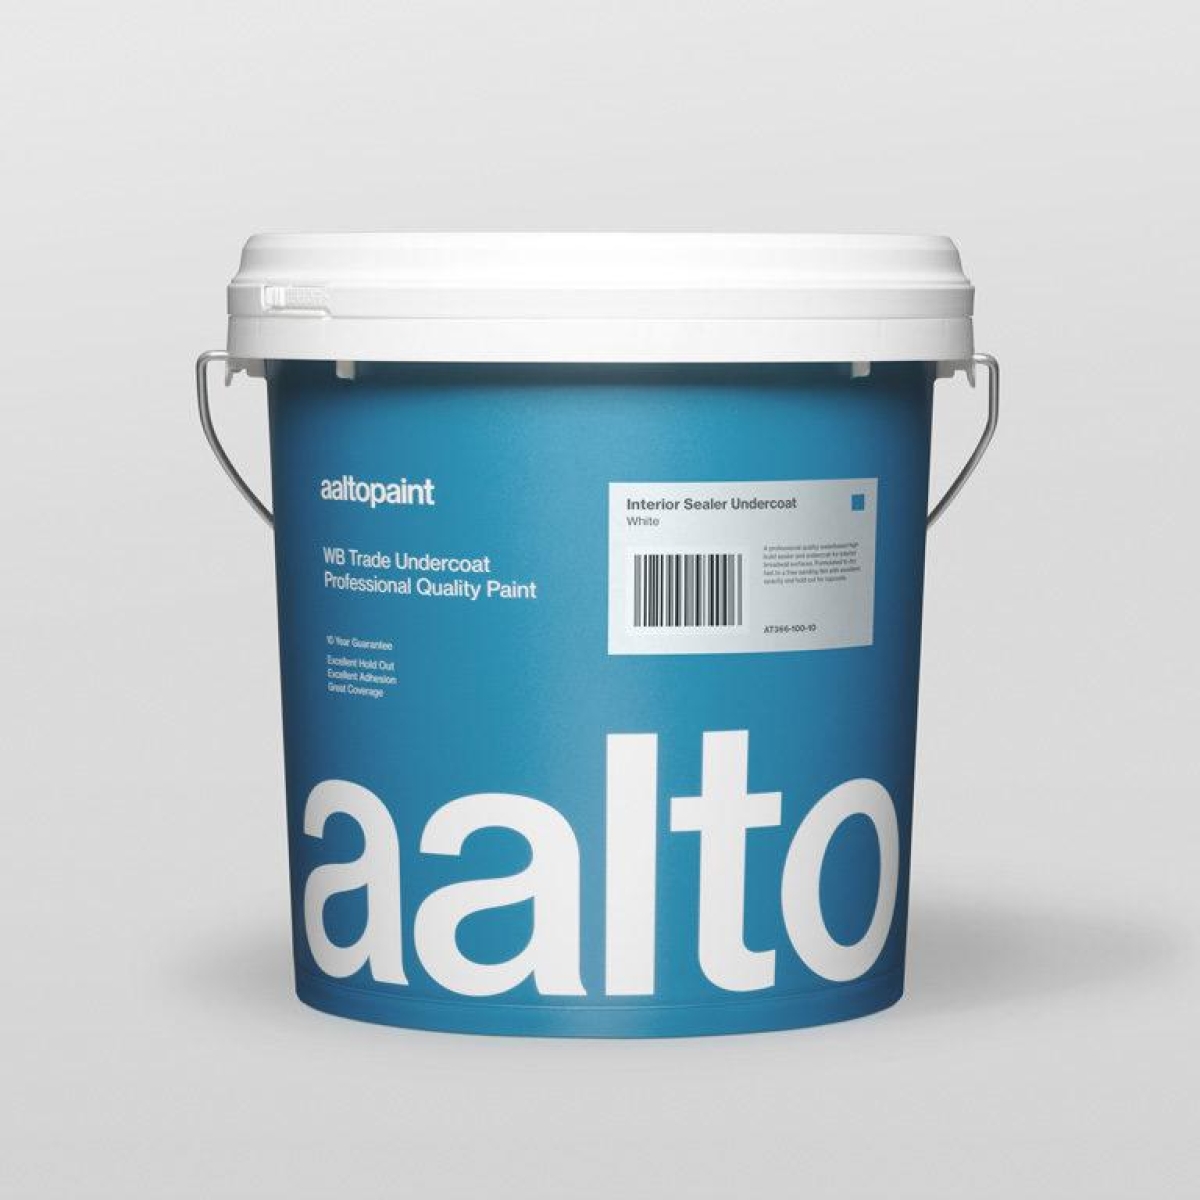 Aalto Paint Interior Sealer Undercoat